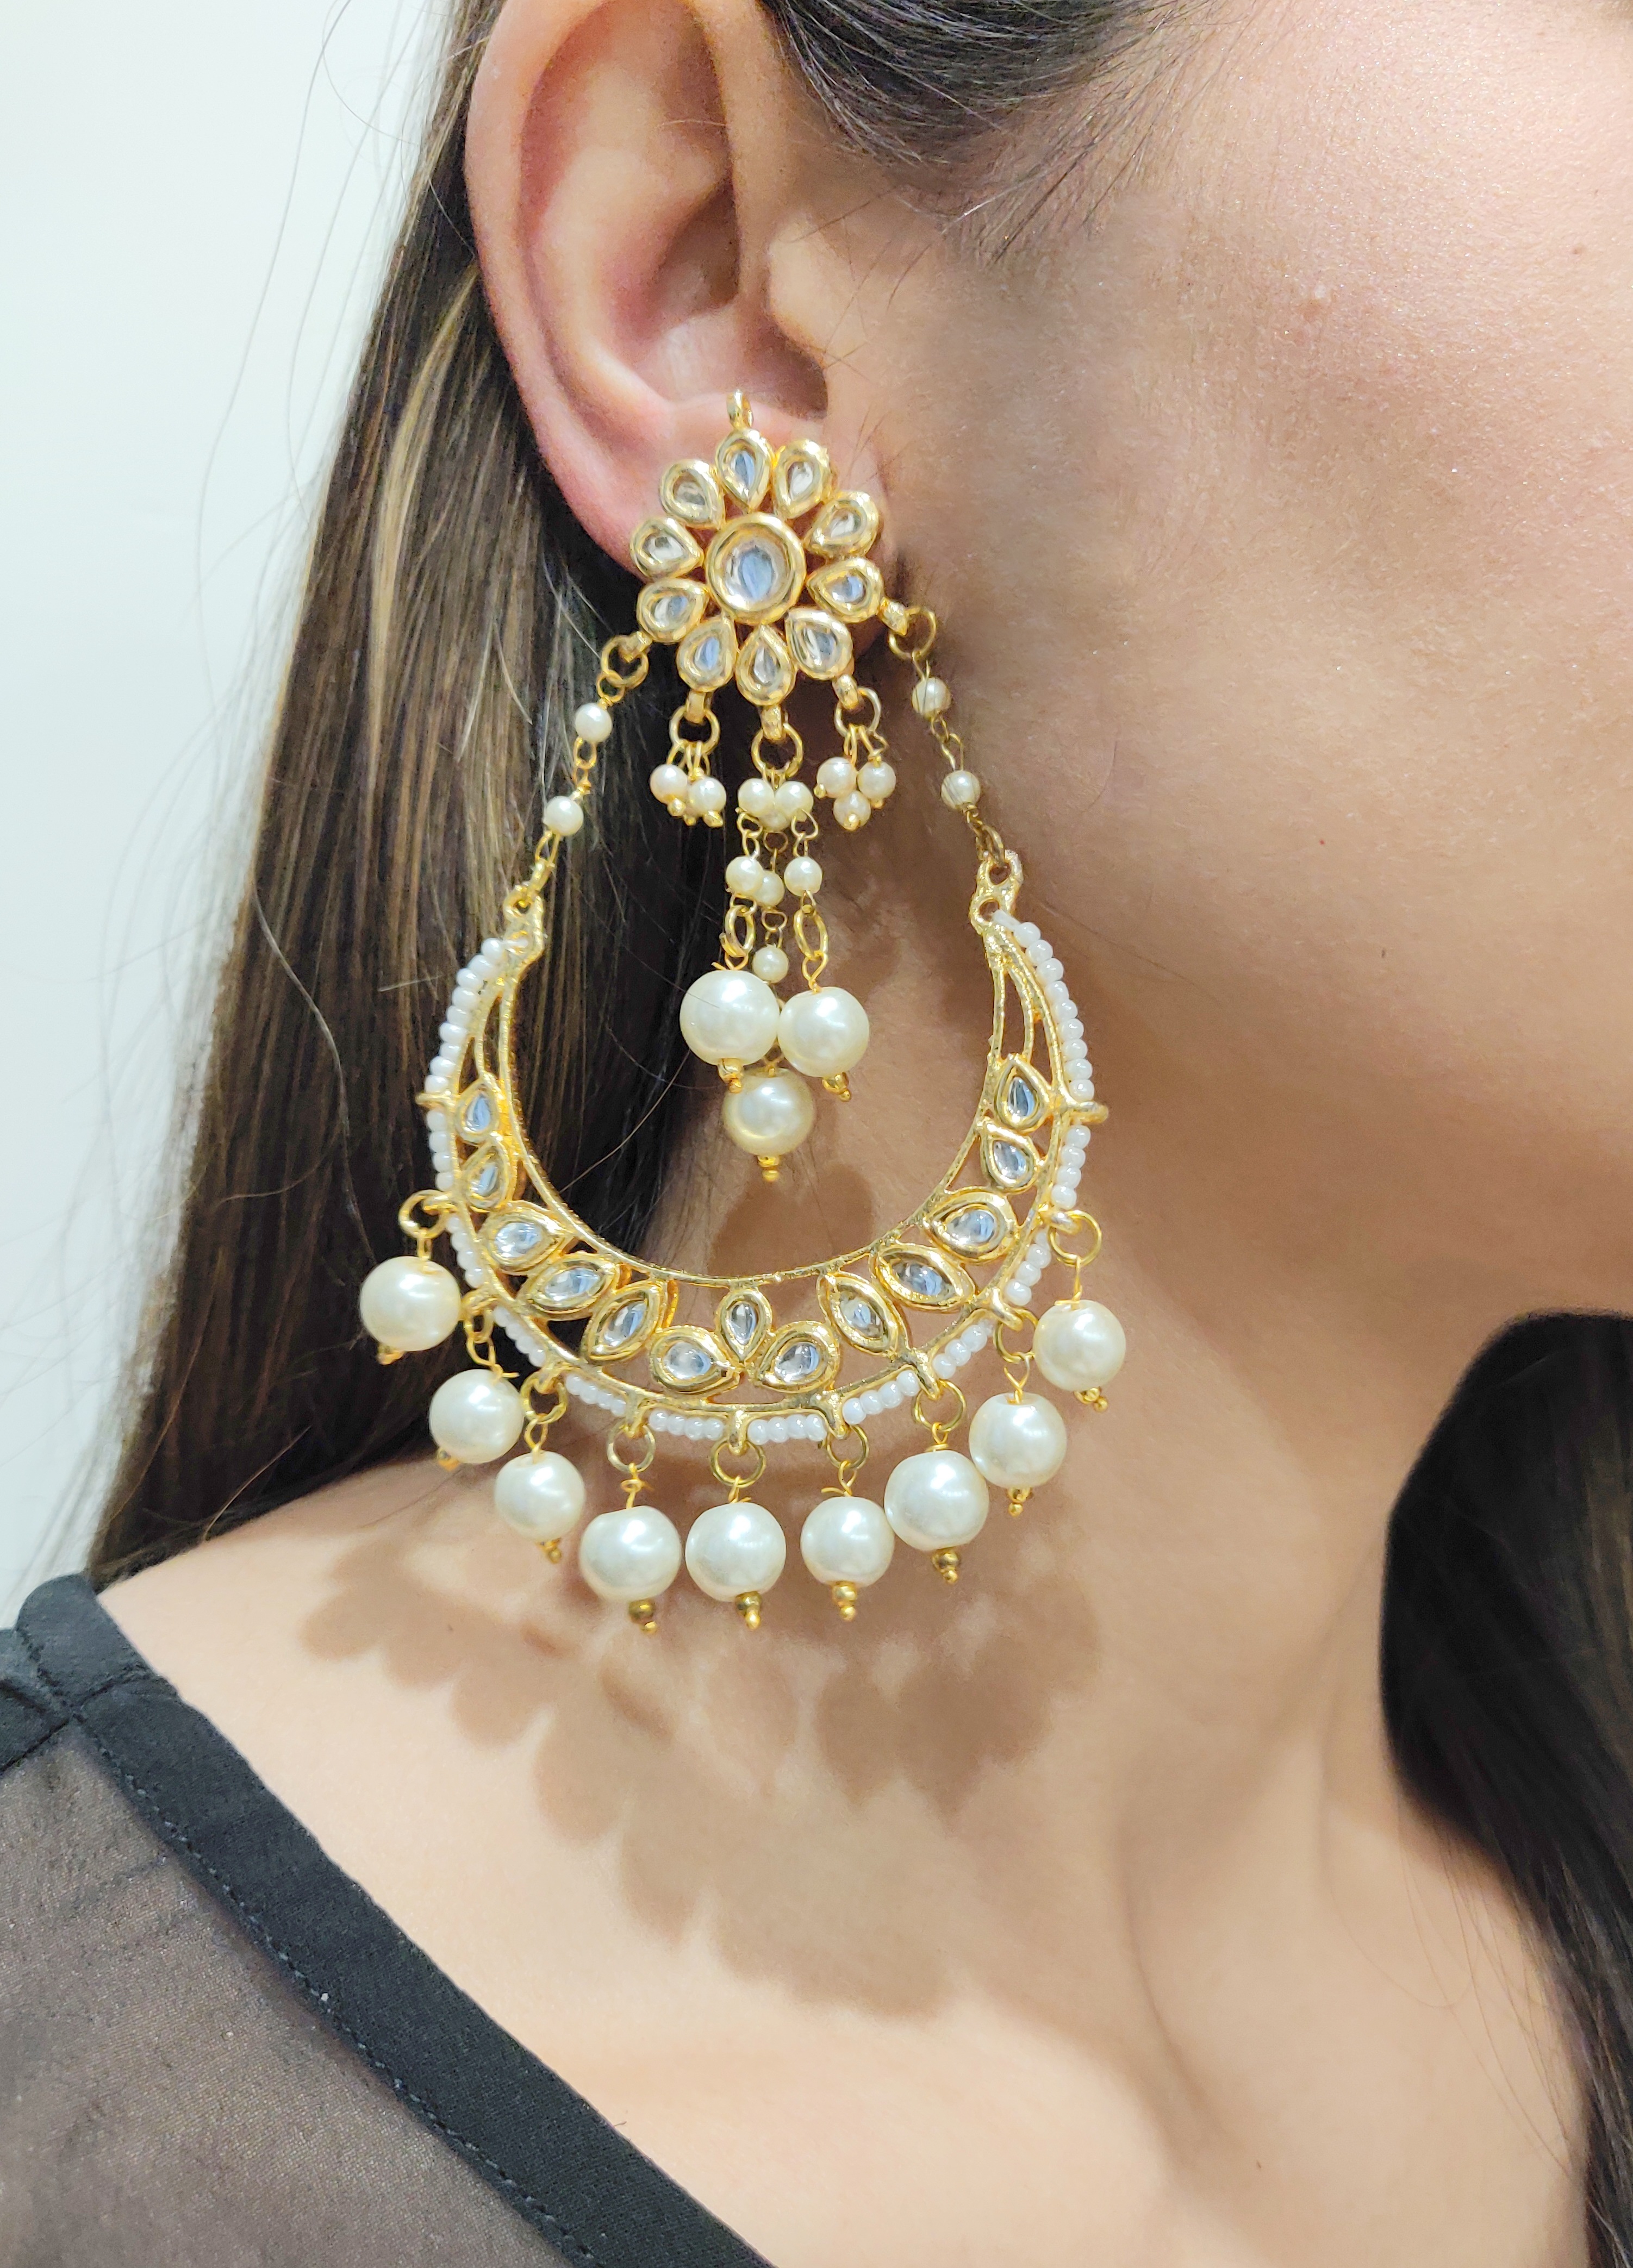 Women's Alloy Chandbali Earrings in WhiteDefault Title | Bridal jewelry,  Indian jewellery design earrings, Indian jewelry earrings